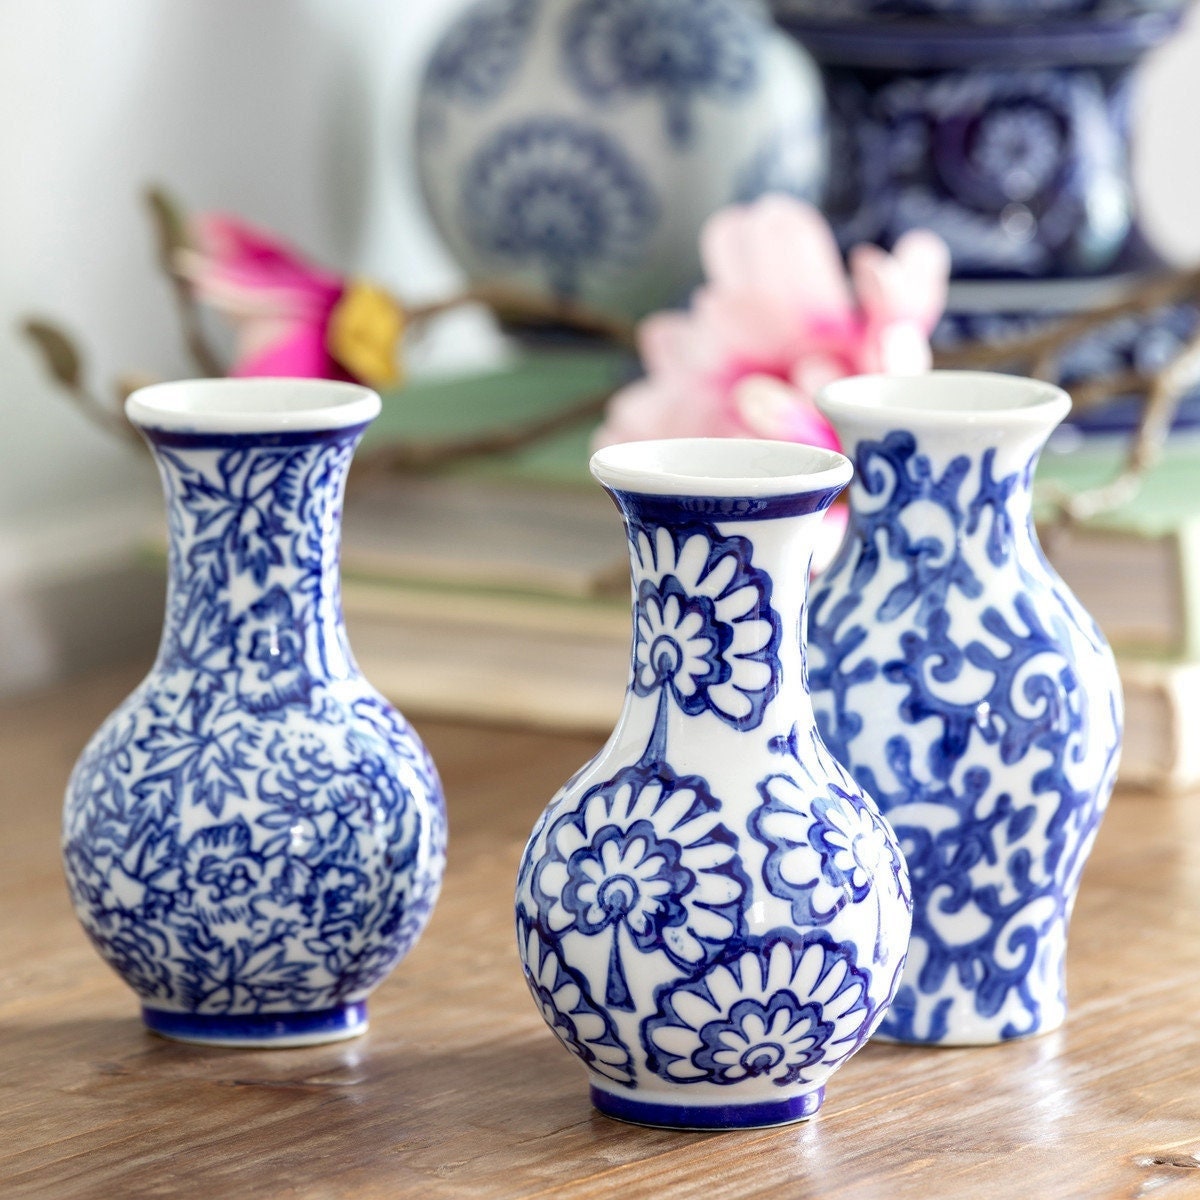  LSA G1282-31-610 Olivia Flower Base, Flower Vase, Light Blue,  Height 12.2 inches (31 cm) : Home & Kitchen